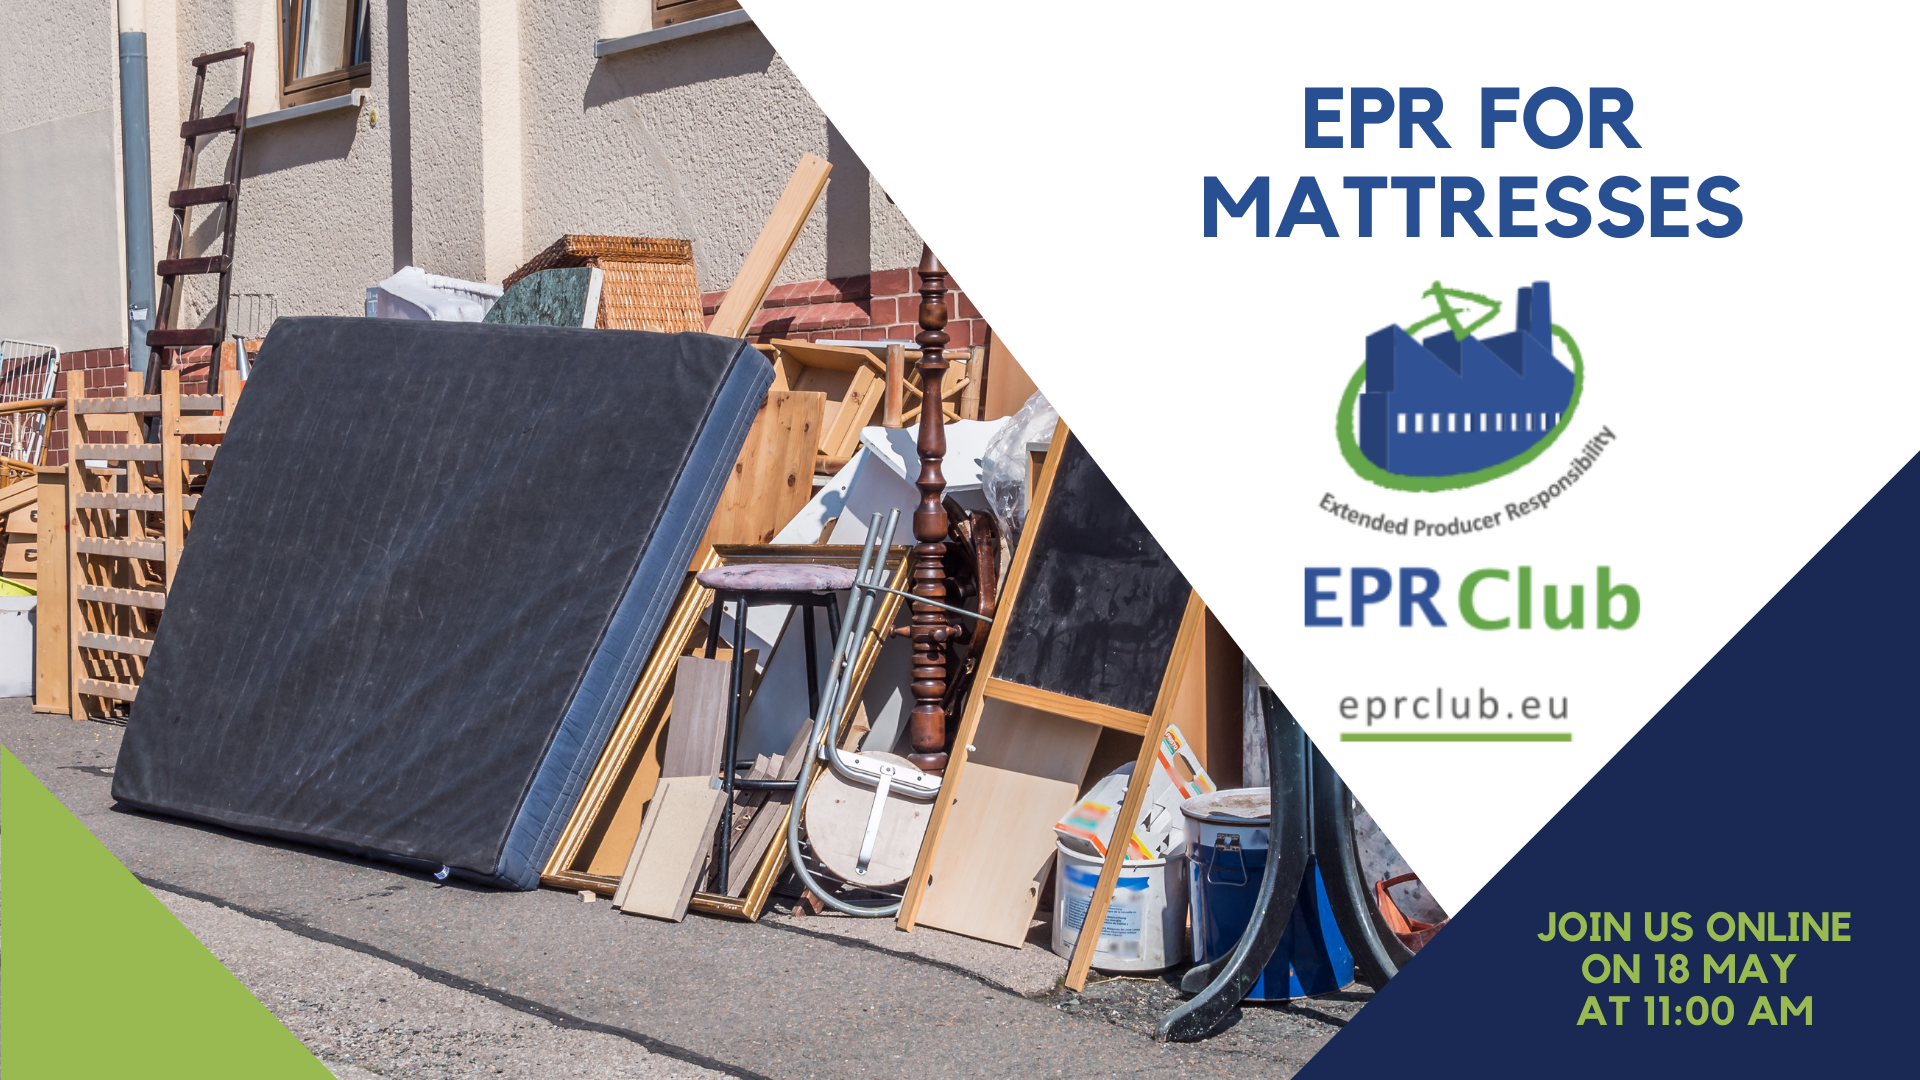 EPR for mattresses 1